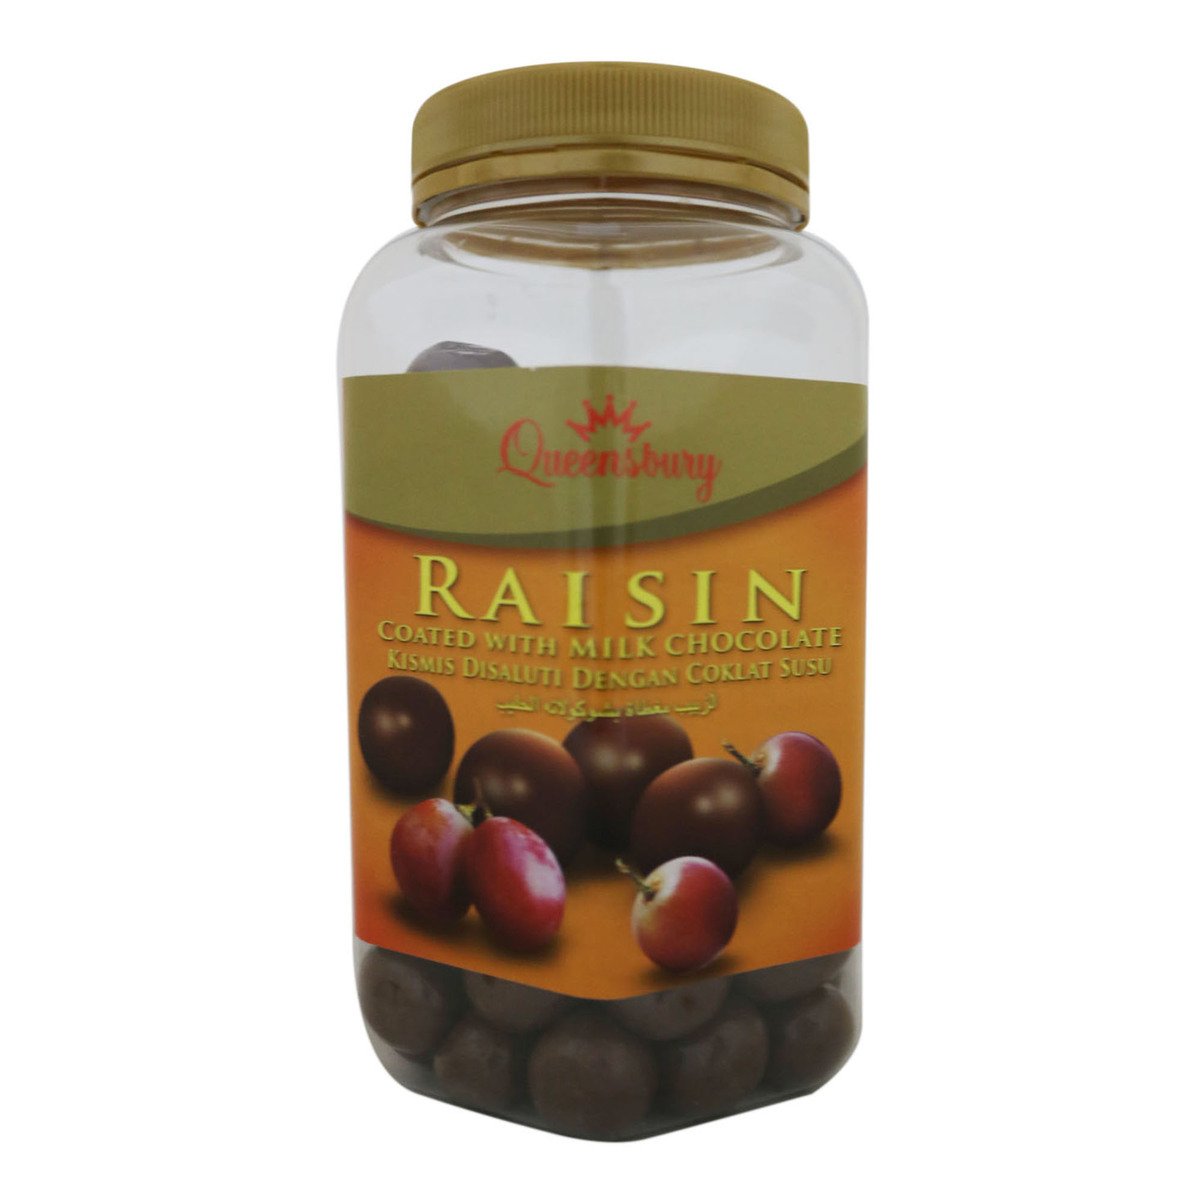 Queensberry Milk Chocolate Raisins Jar 450g